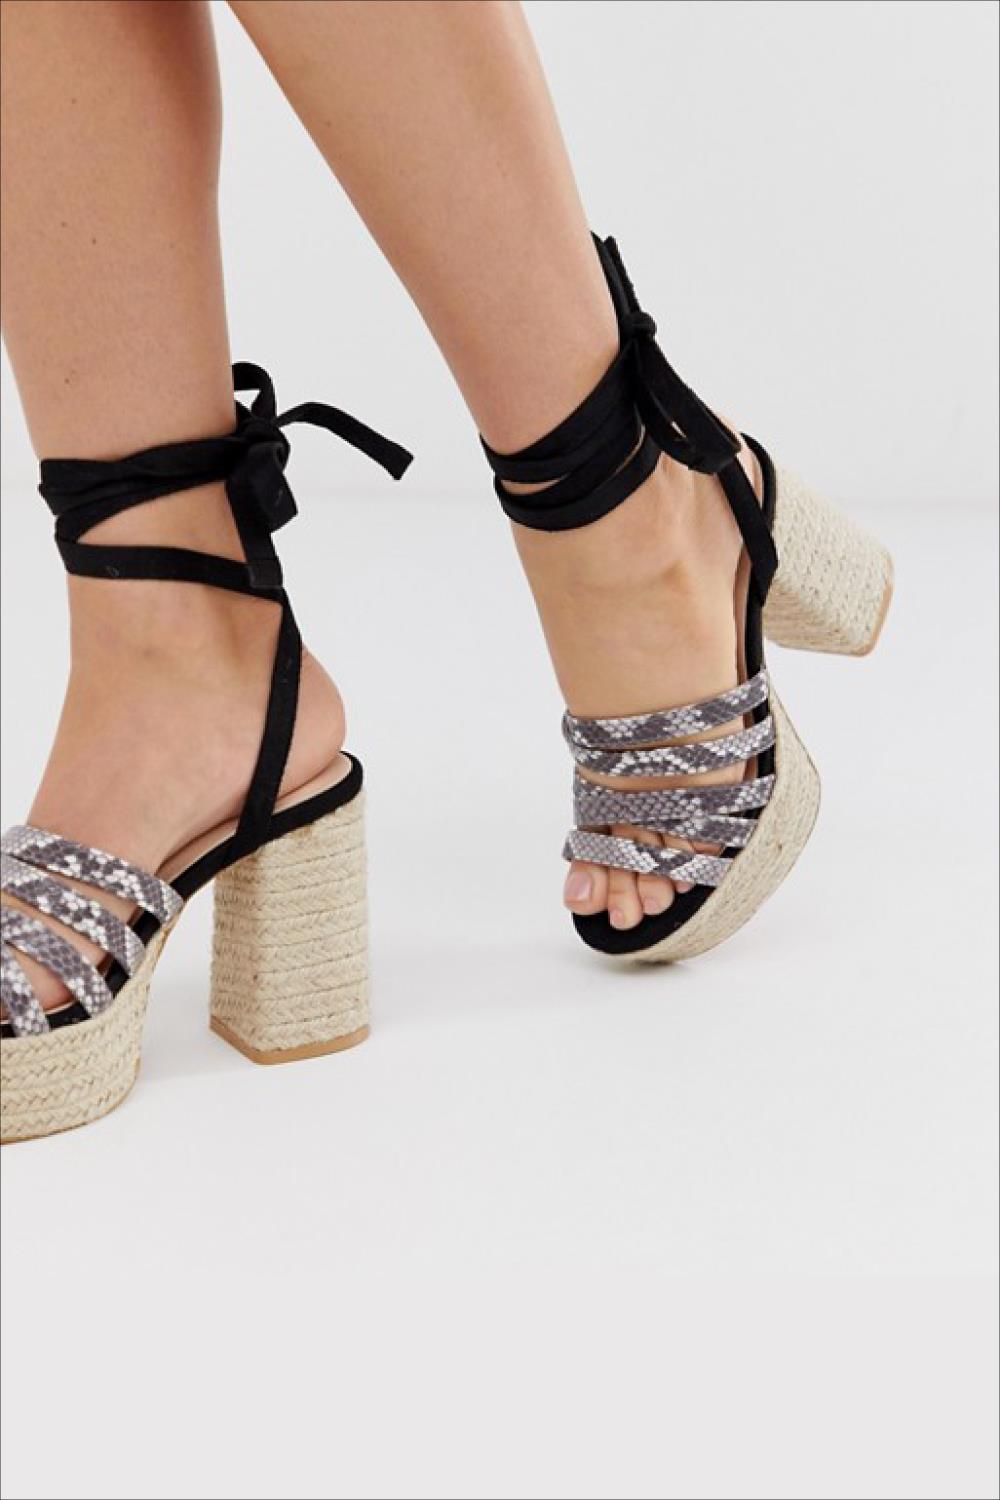 sandalias de moda rebajas 2019 asos 33,99€